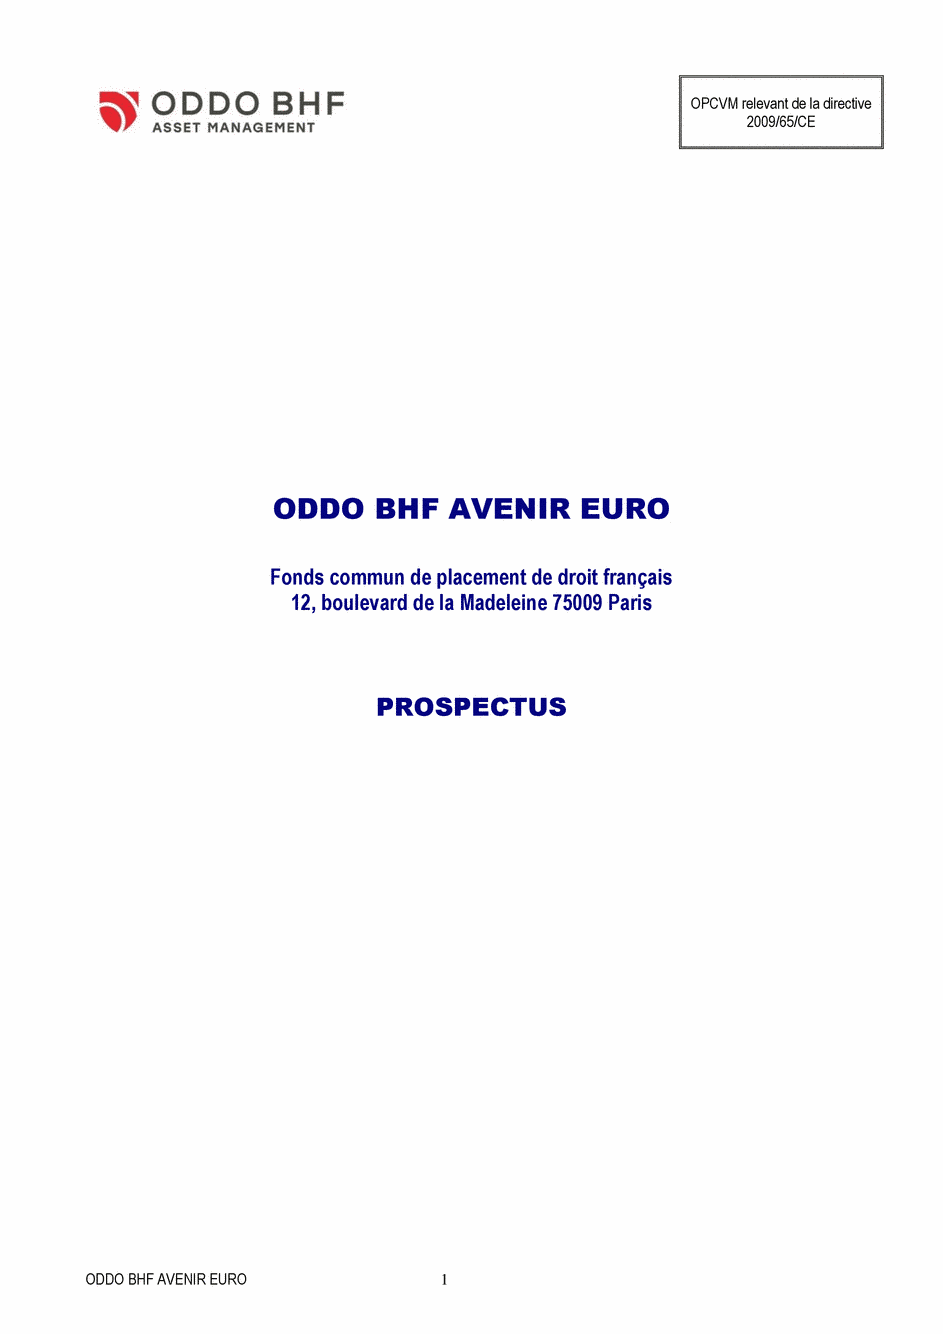 Prospectus ODDO BHF AVENIR EURO CR-EUR - 10/08/2020 - Français